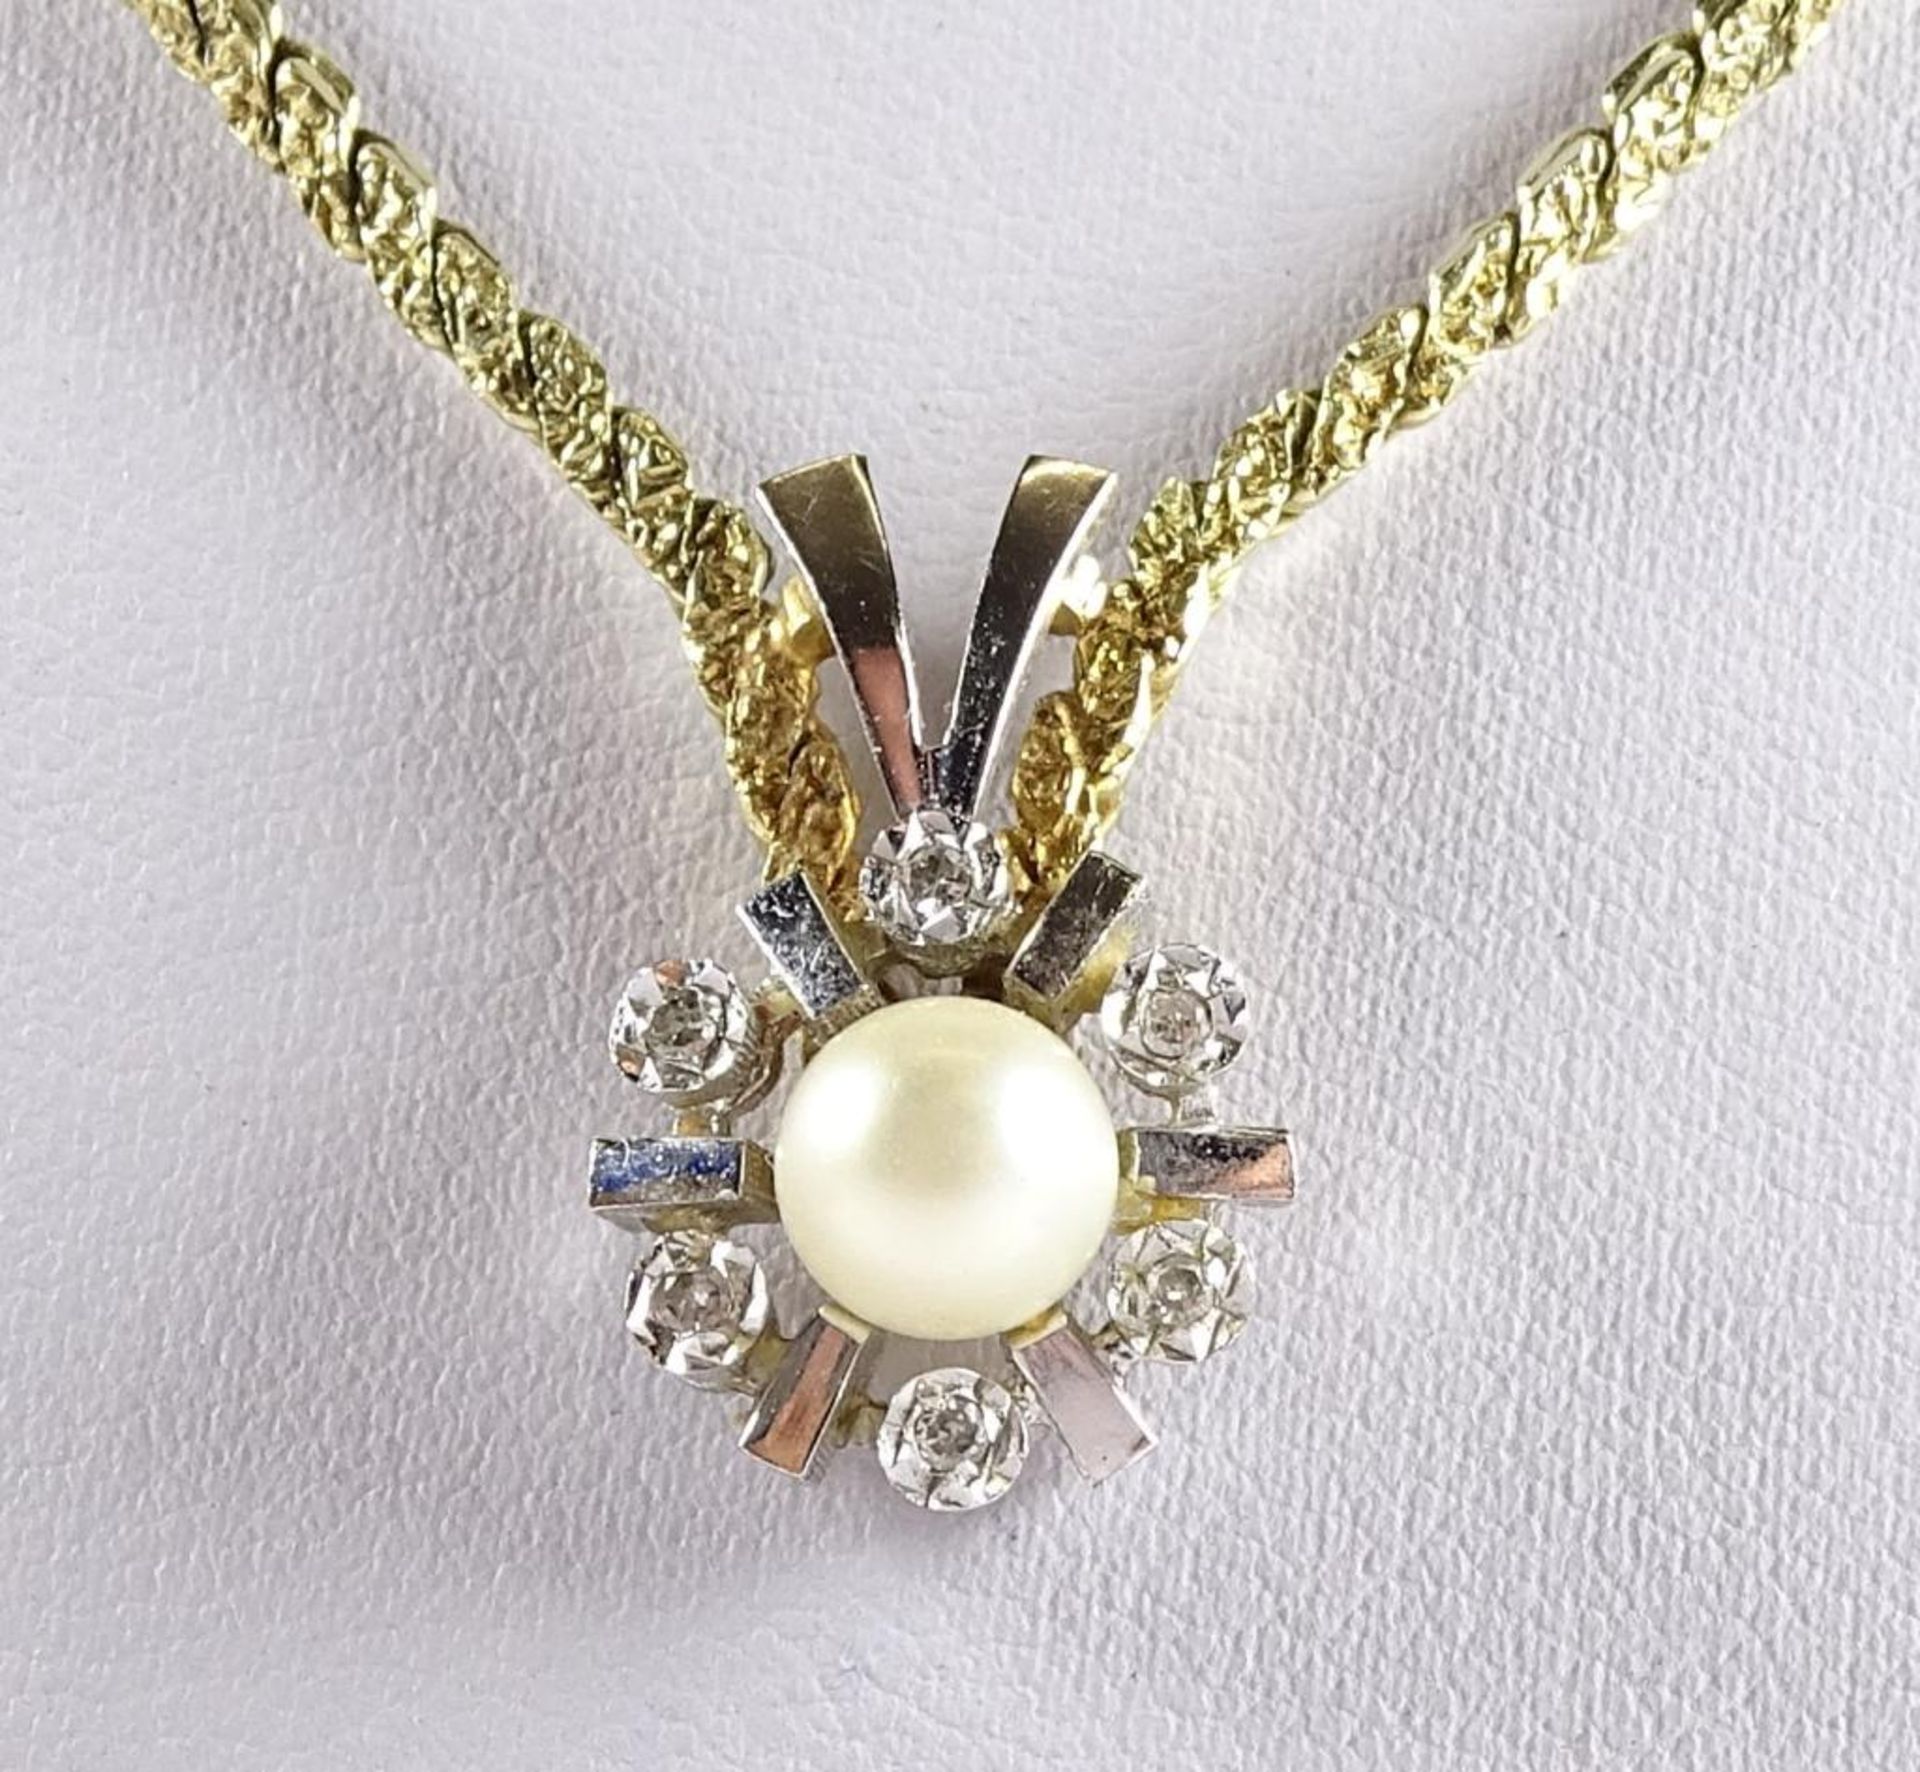 Massives Bicolor Gold Collier 585/000, mit 6 Diamanten und Perle, ges.gew. 20,3gr., L46cm - Bild 4 aus 5